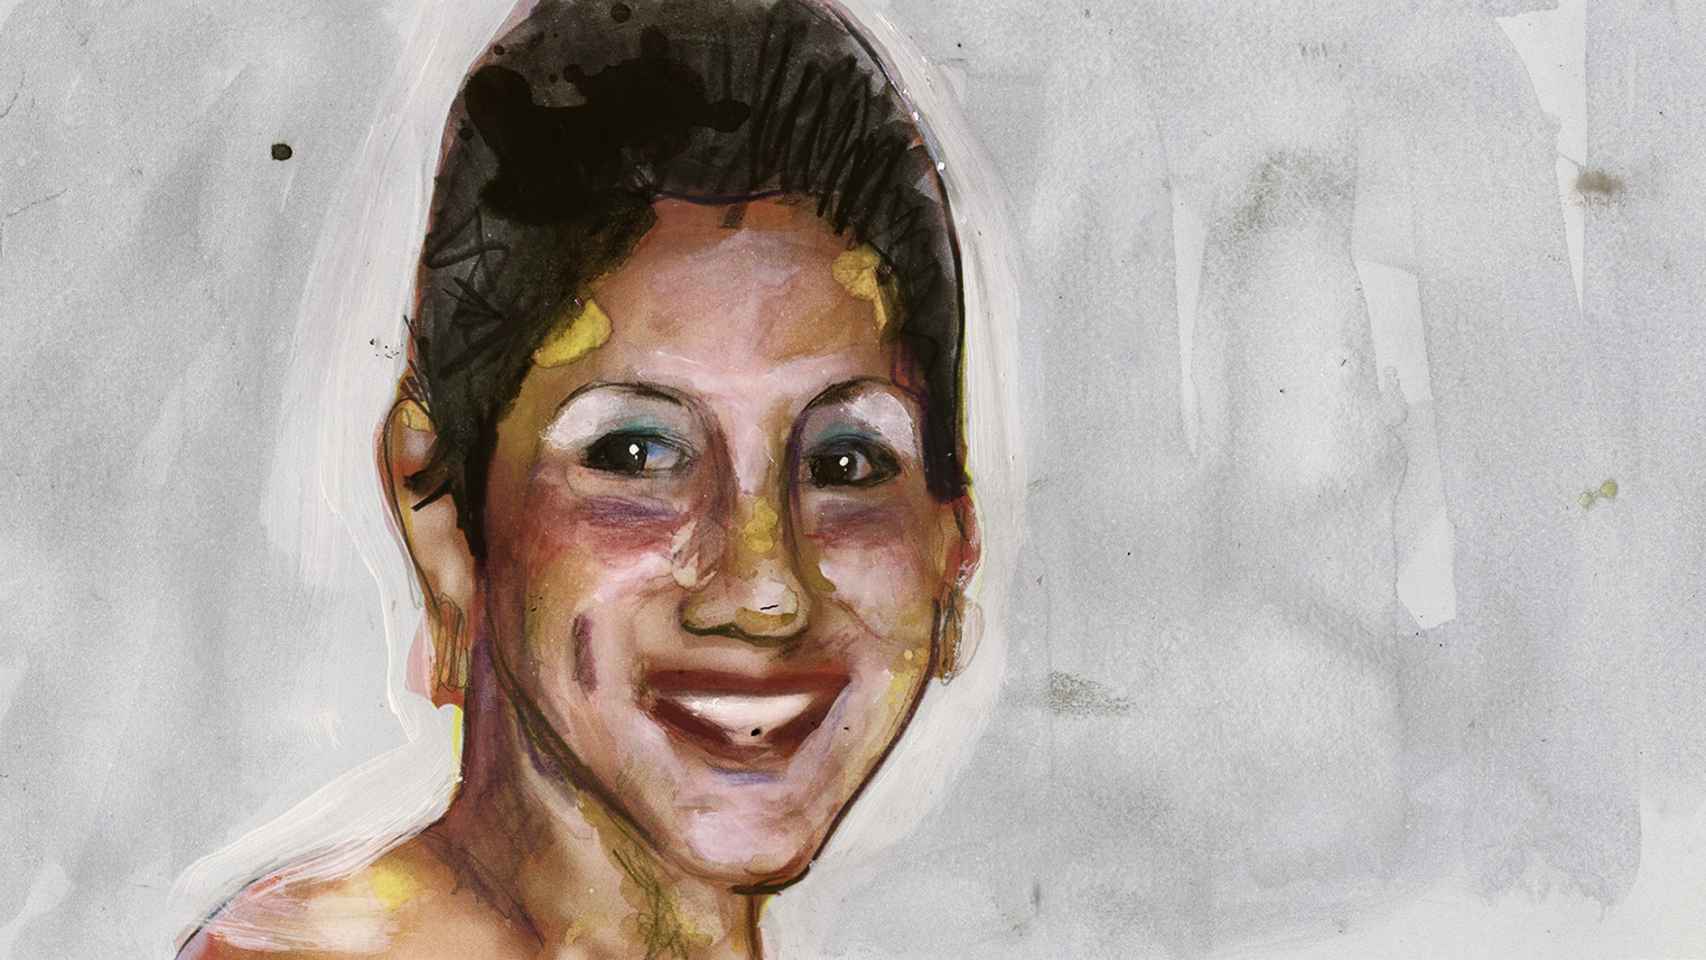 Ilustración de Erika Lorena Bonilla basada en una imagen real de la decimonovena víctima de la violencia machista.